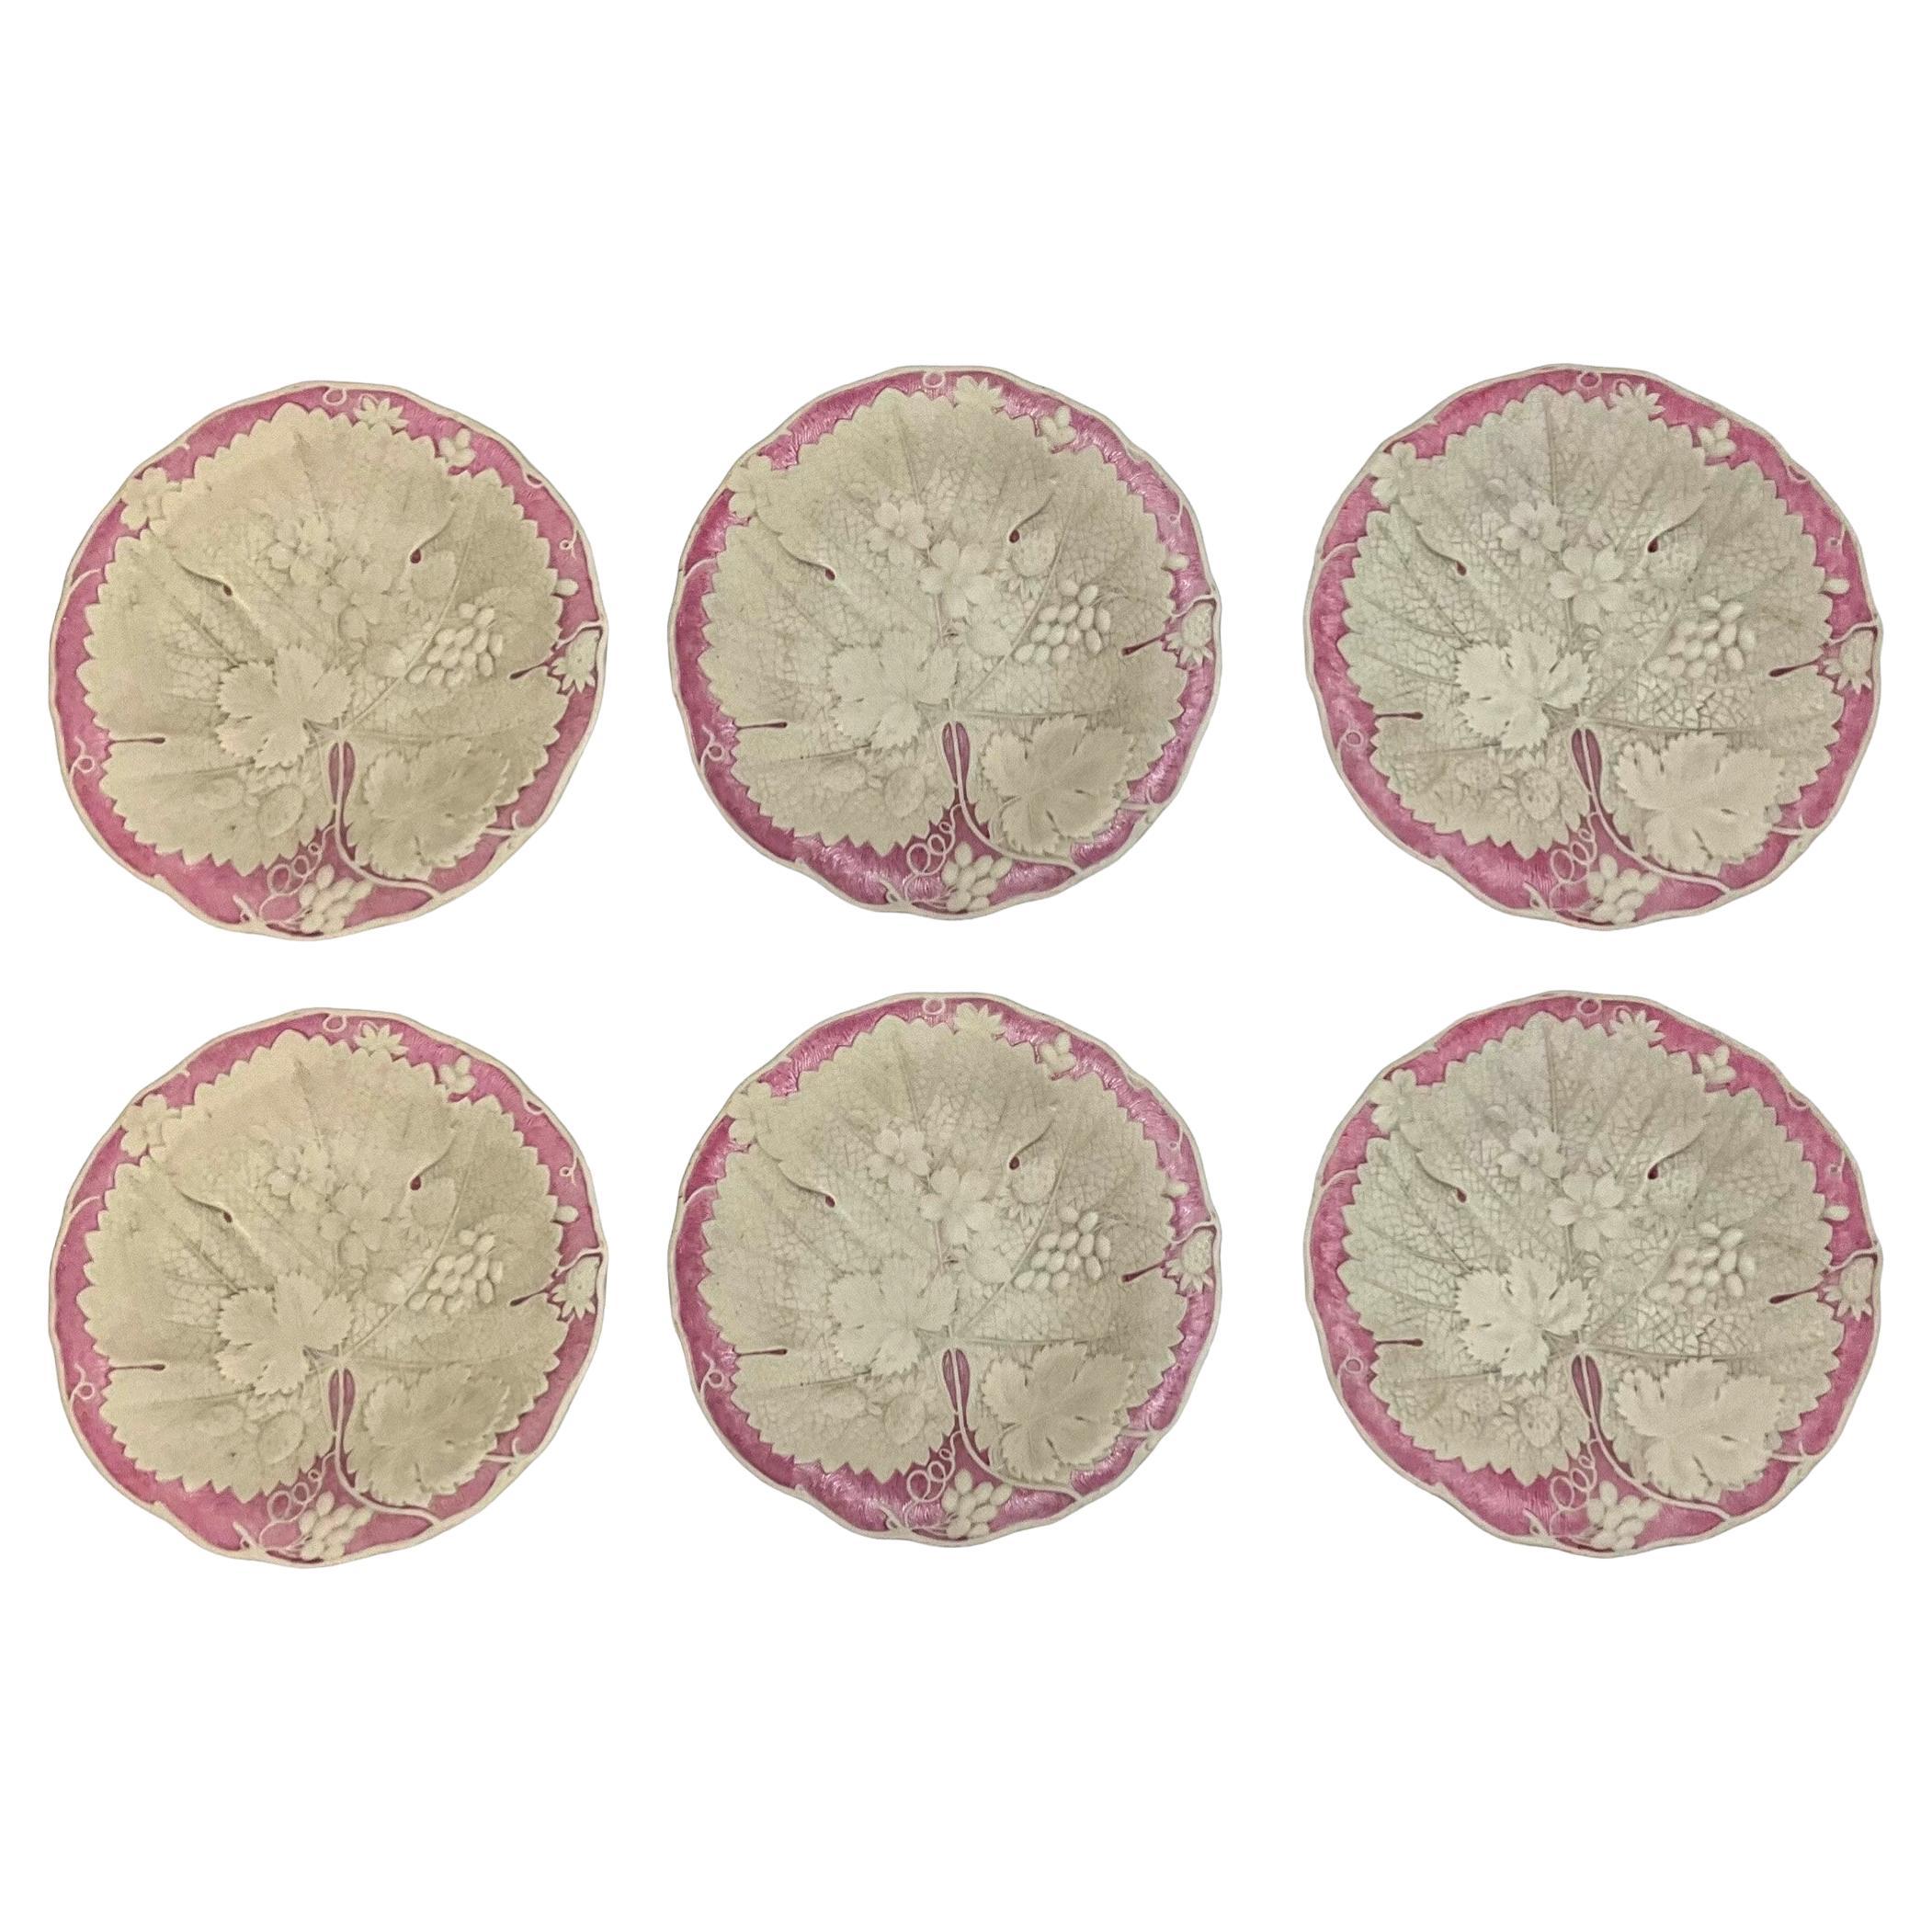 English Wedgwood Style Basalt Glaze Pink & White Botanical / Begonia Plates -S/6